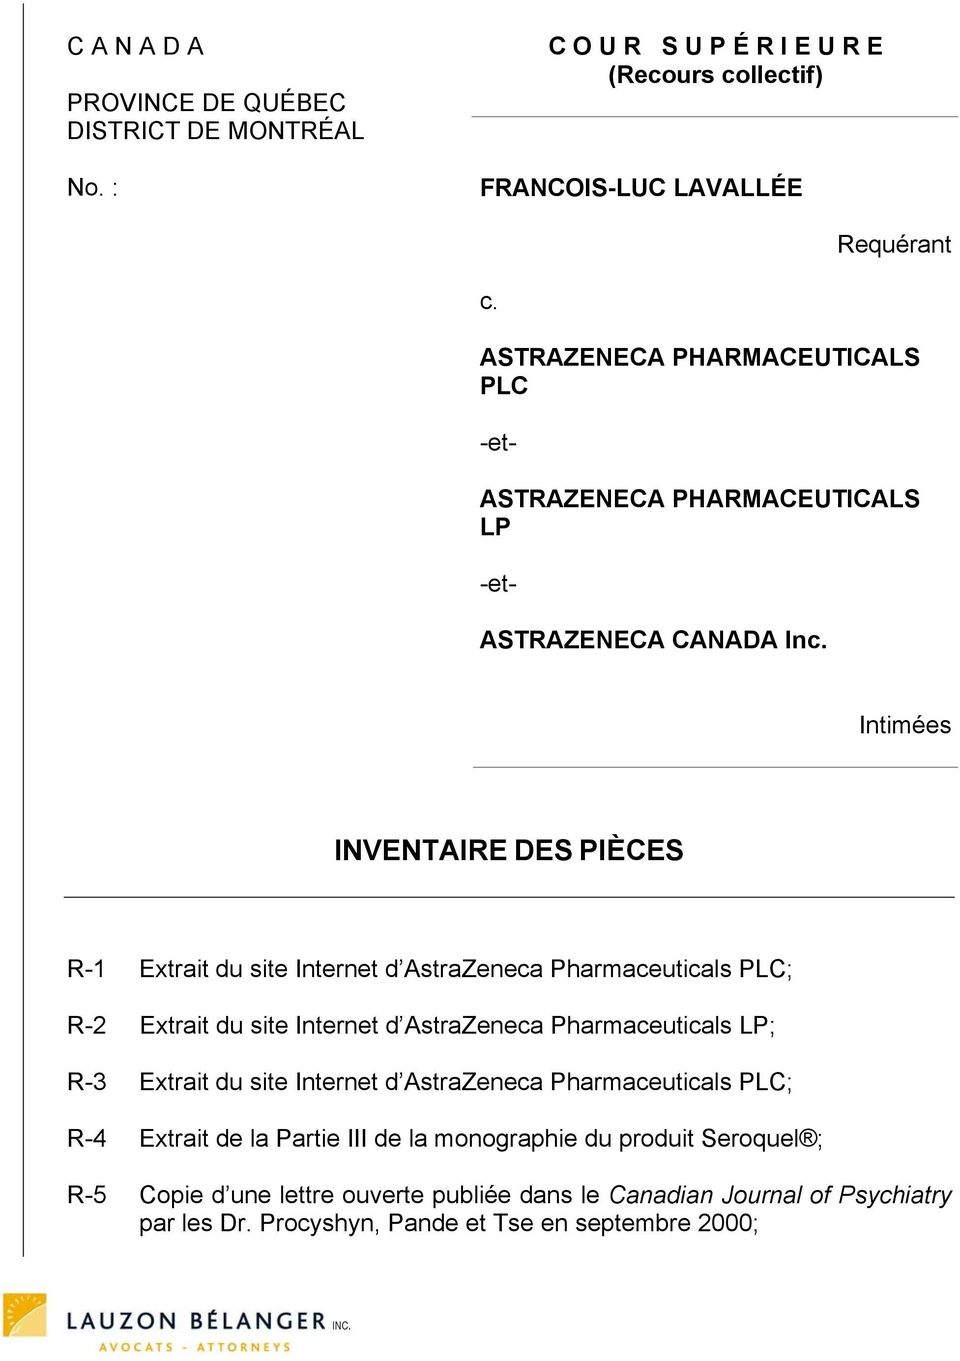 Intimées INVENTAIRE DES PIÈCES R-1 Extrait du site Internet d AstraZeneca Pharmaceuticals PLC; R-2 Extrait du site Internet d AstraZeneca Pharmaceuticals LP; R-3